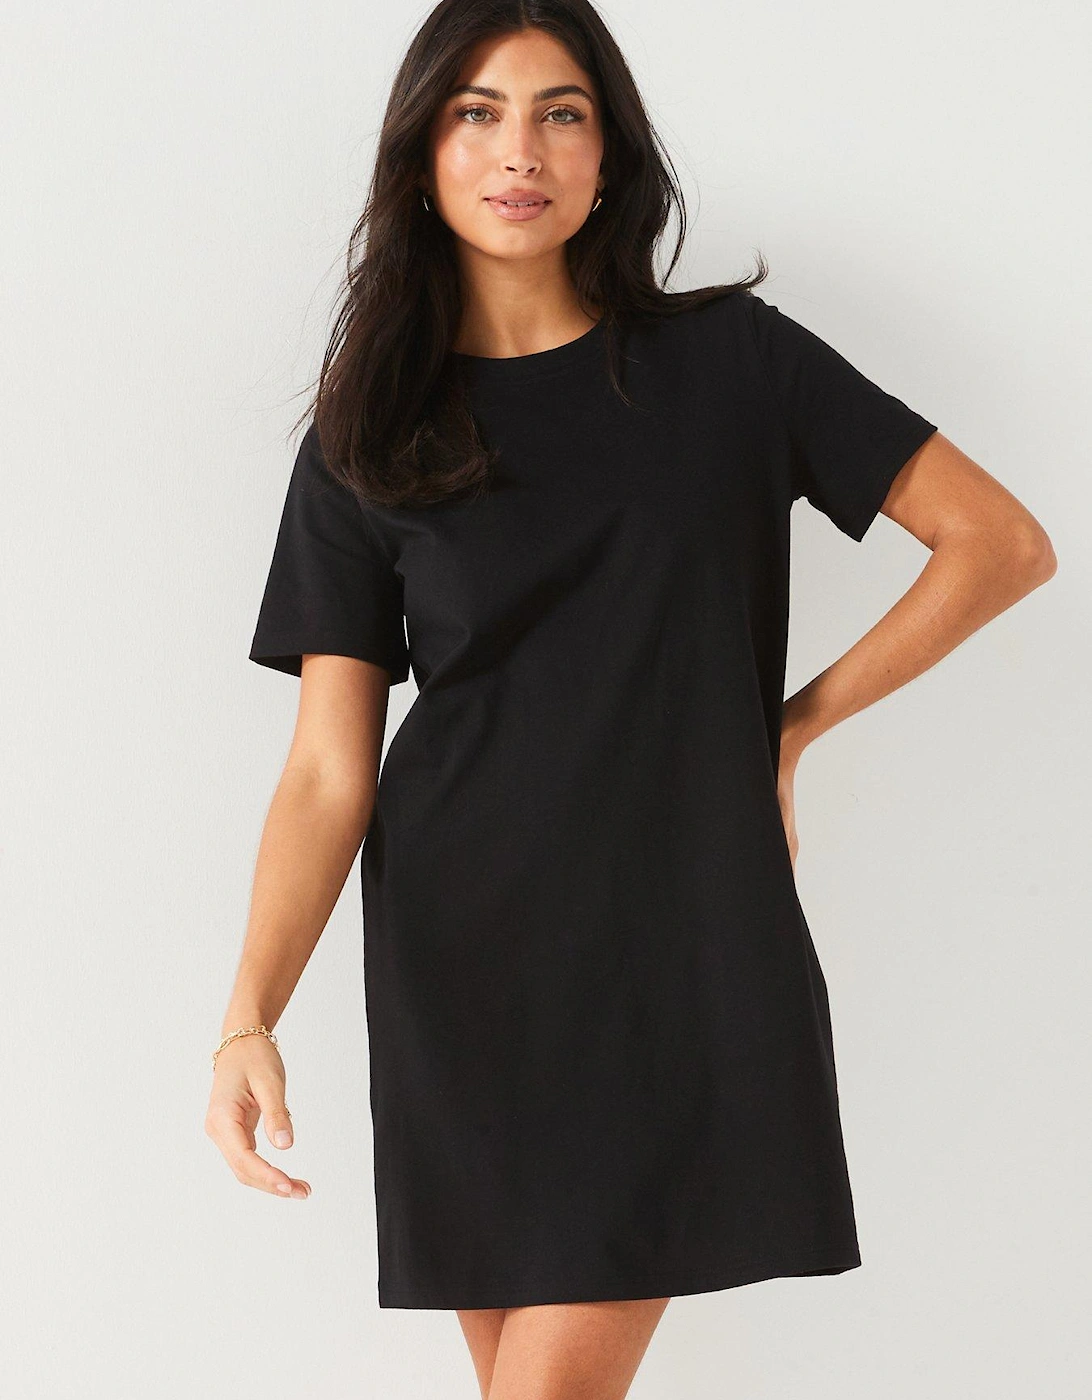 The Essential Tshirt Dress - Black